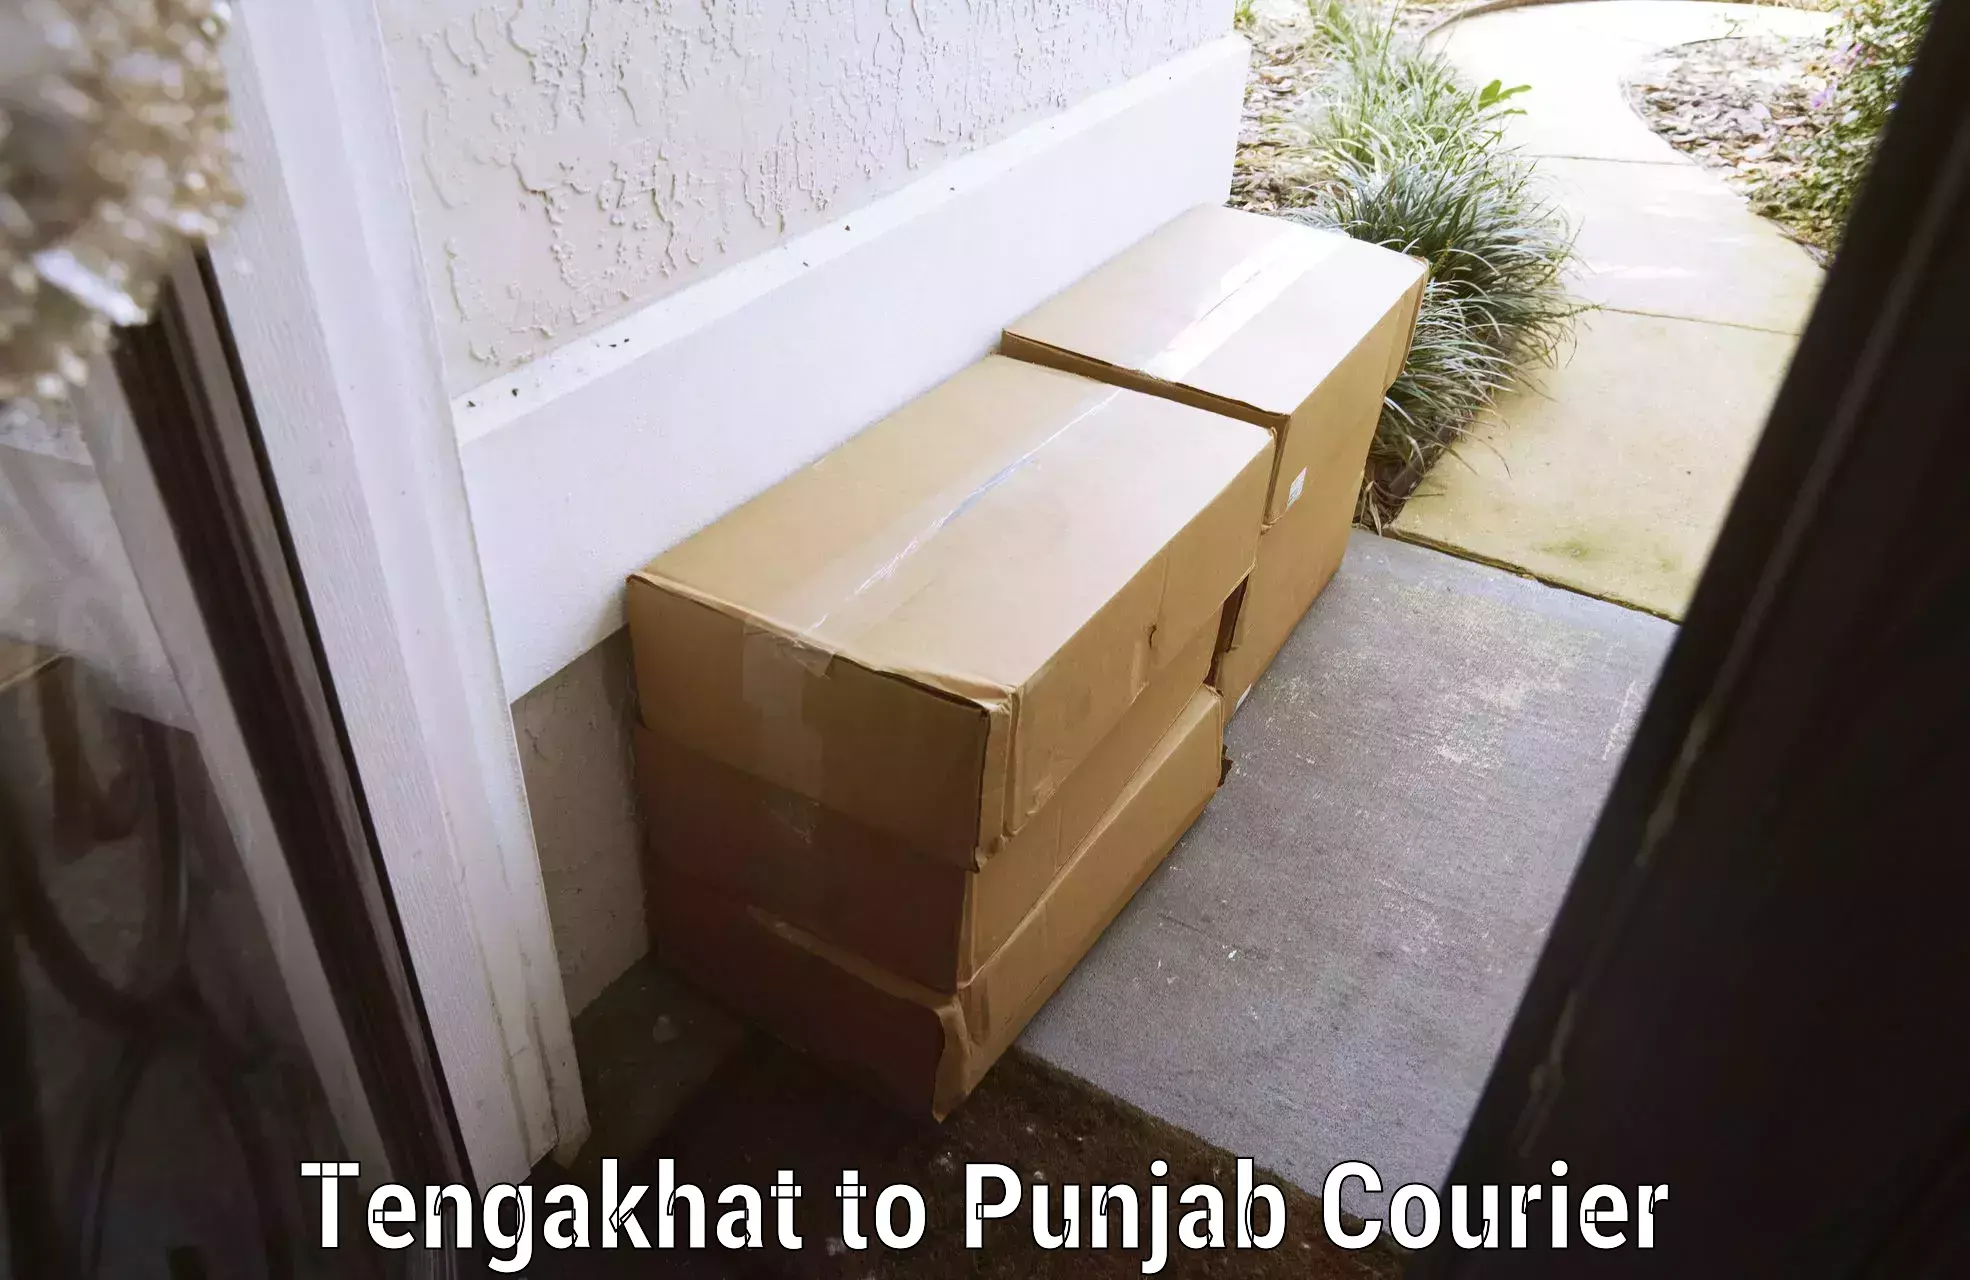 Luggage transport service Tengakhat to Punjab